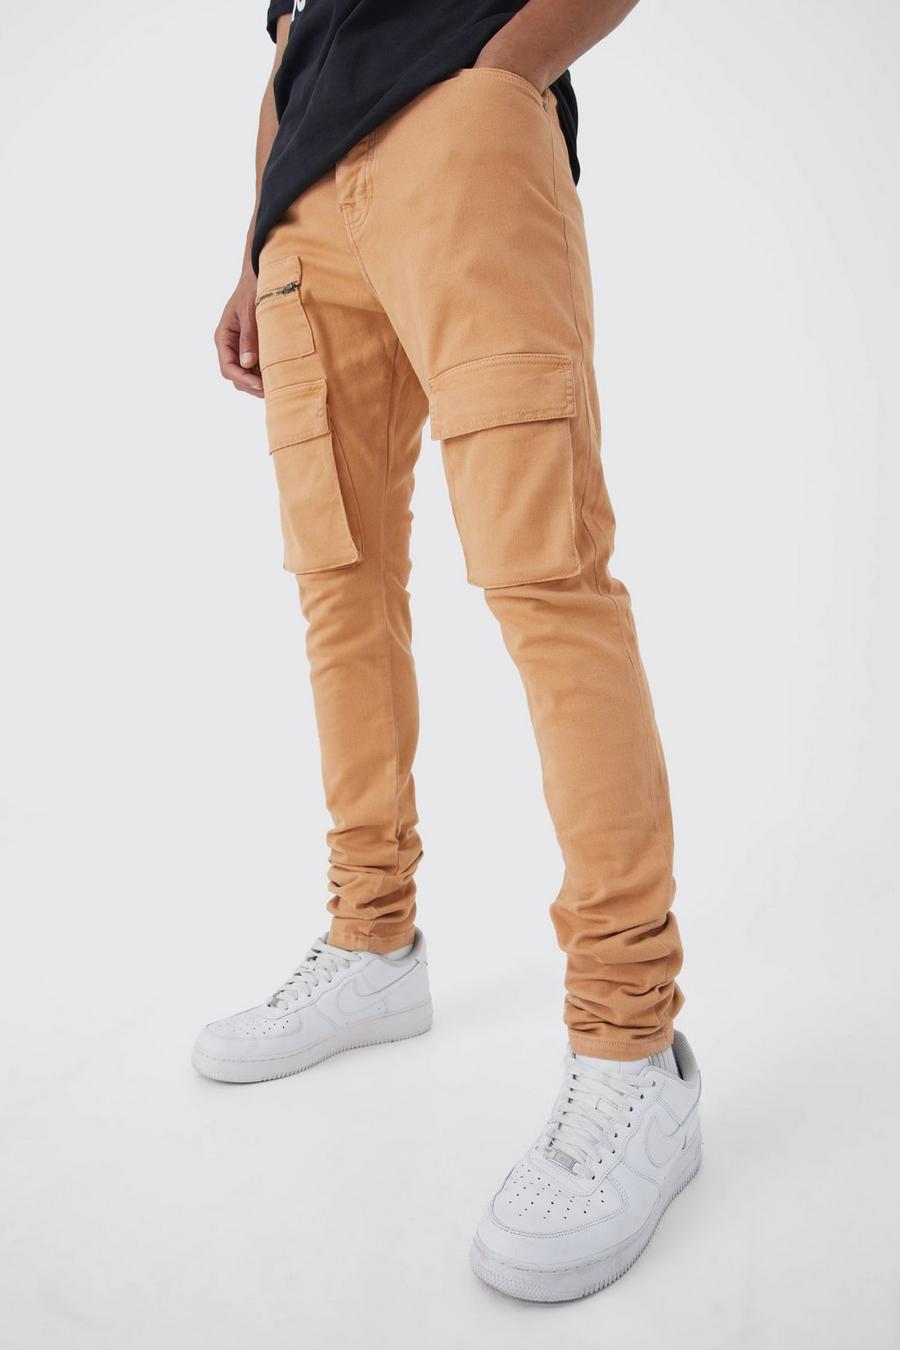 Pantaloni Cargo Tall Skinny Fit con vita fissa, pieghe sul fondo e zip, Orange